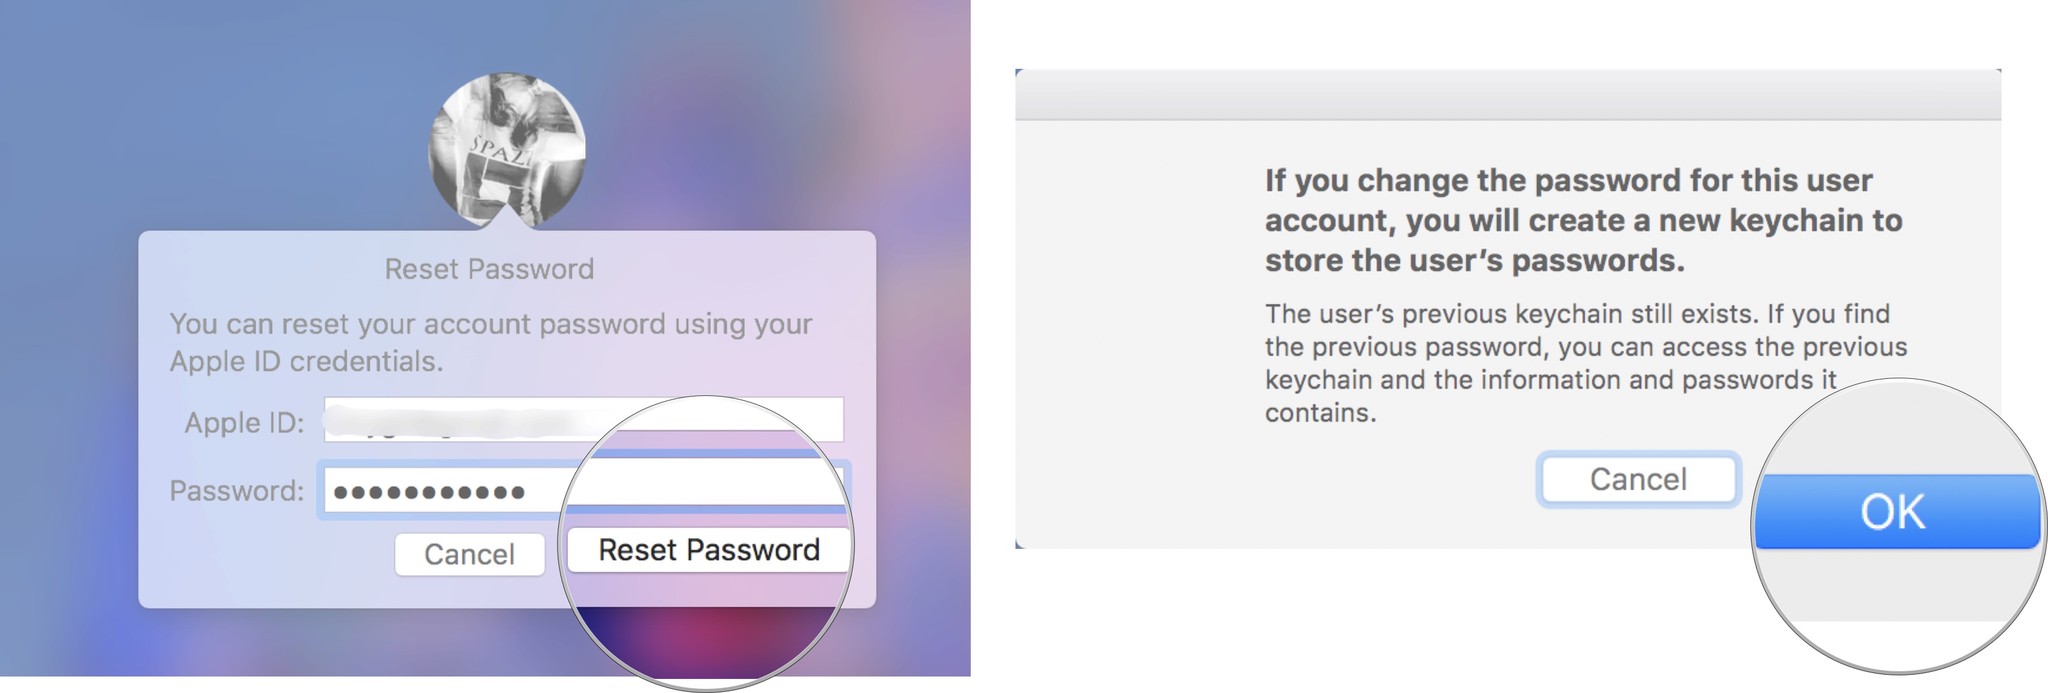 Click reset password, then click ok